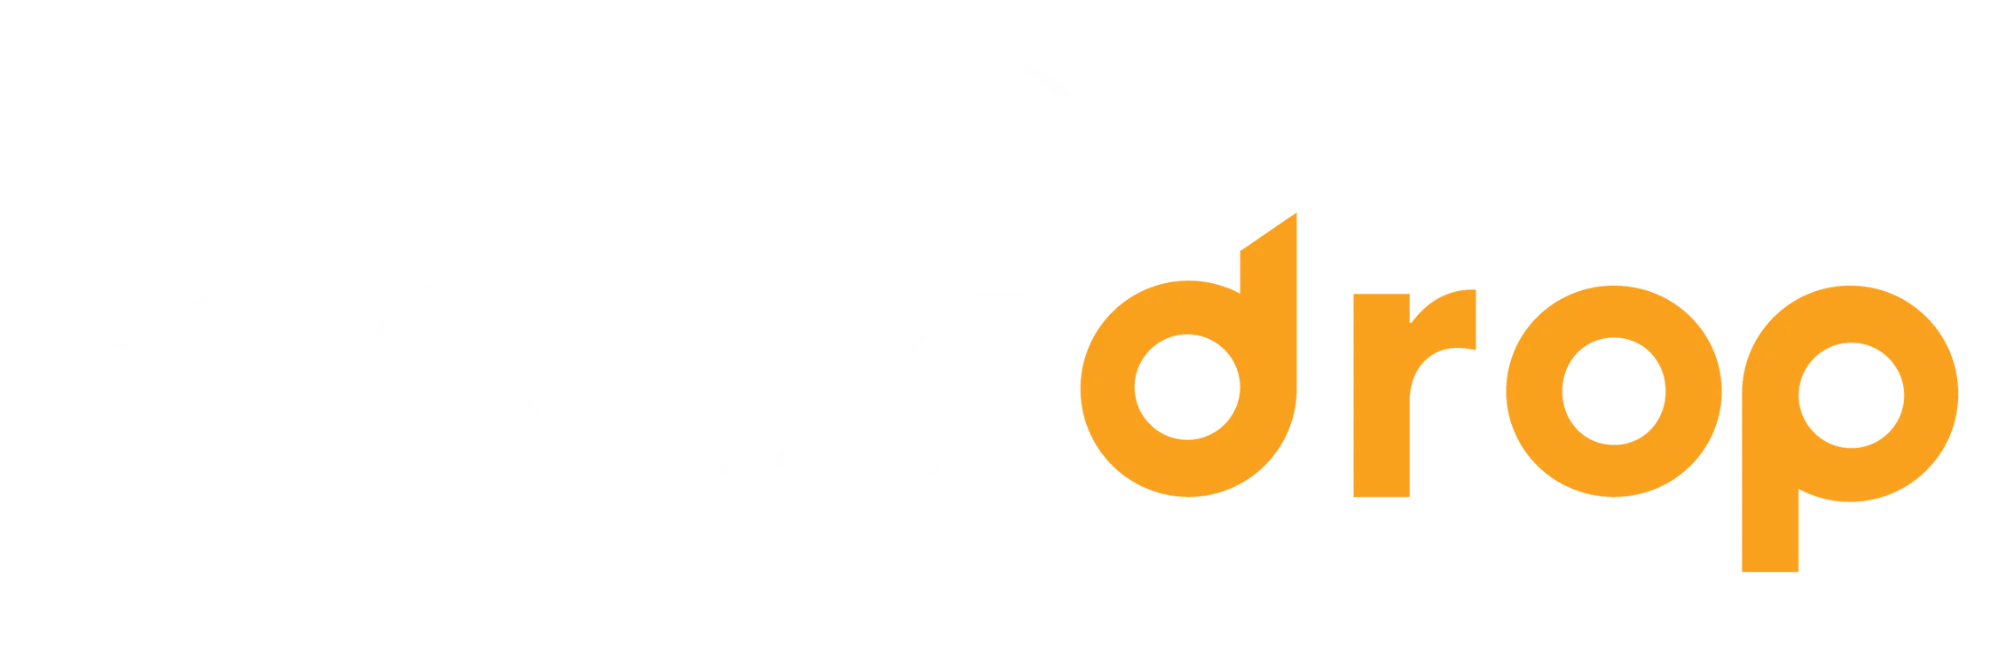 Msosidrop logo